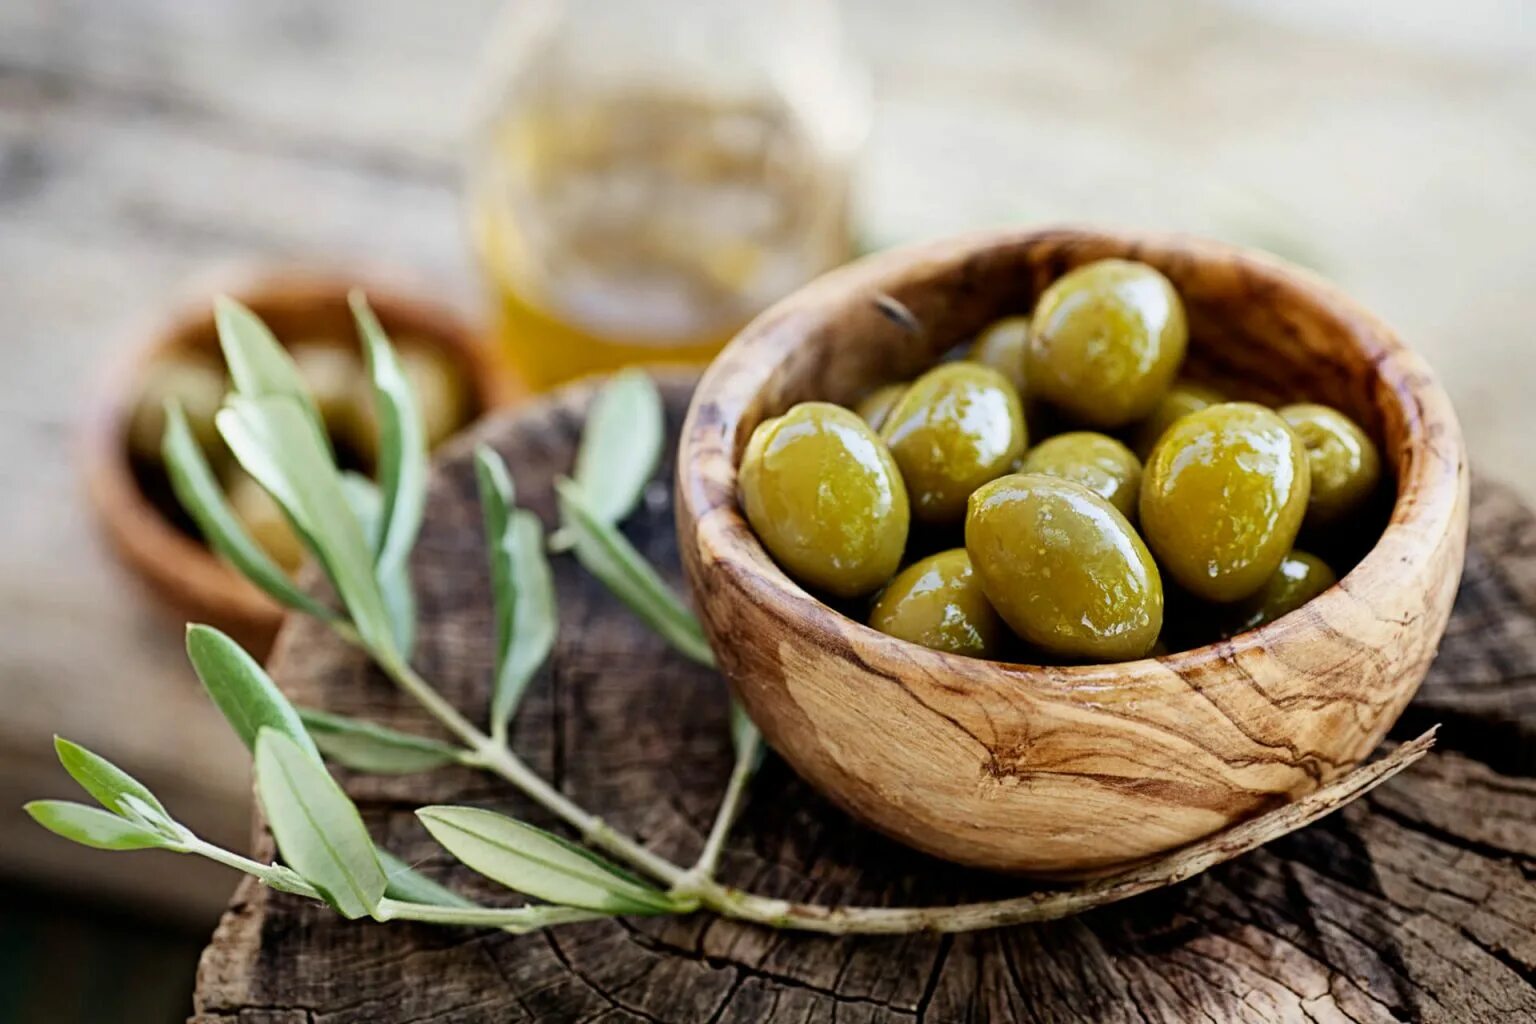 Fior di Terra оливки. Оливковые косточки маслины. Греческие оливки. Оливки большие зеленые.